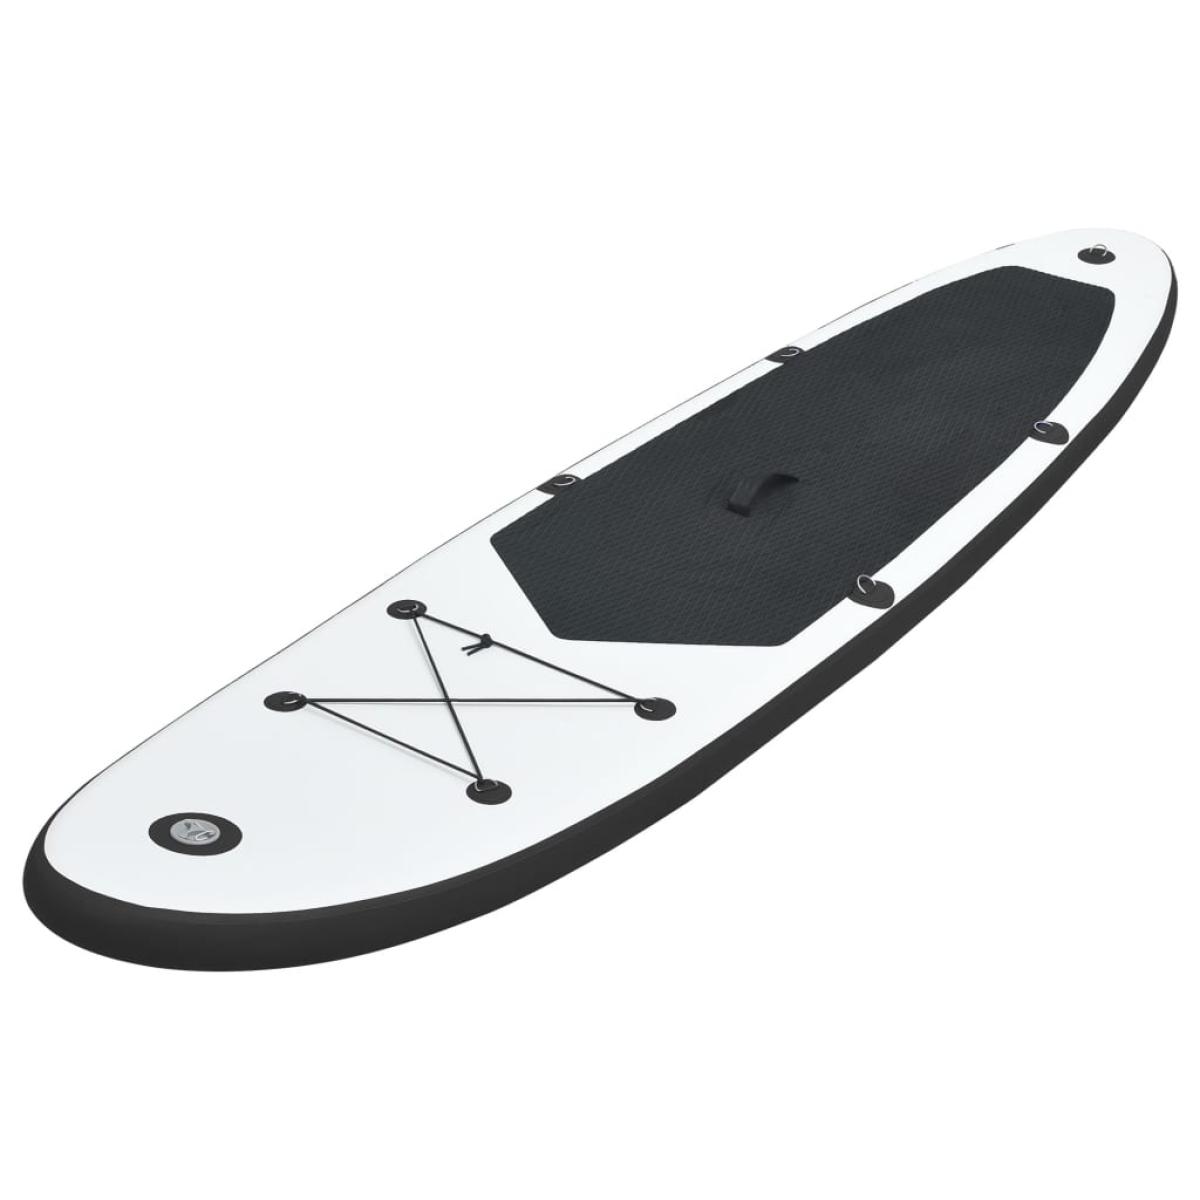 Juego de tabla de paddle surf hinchable negro y blanco